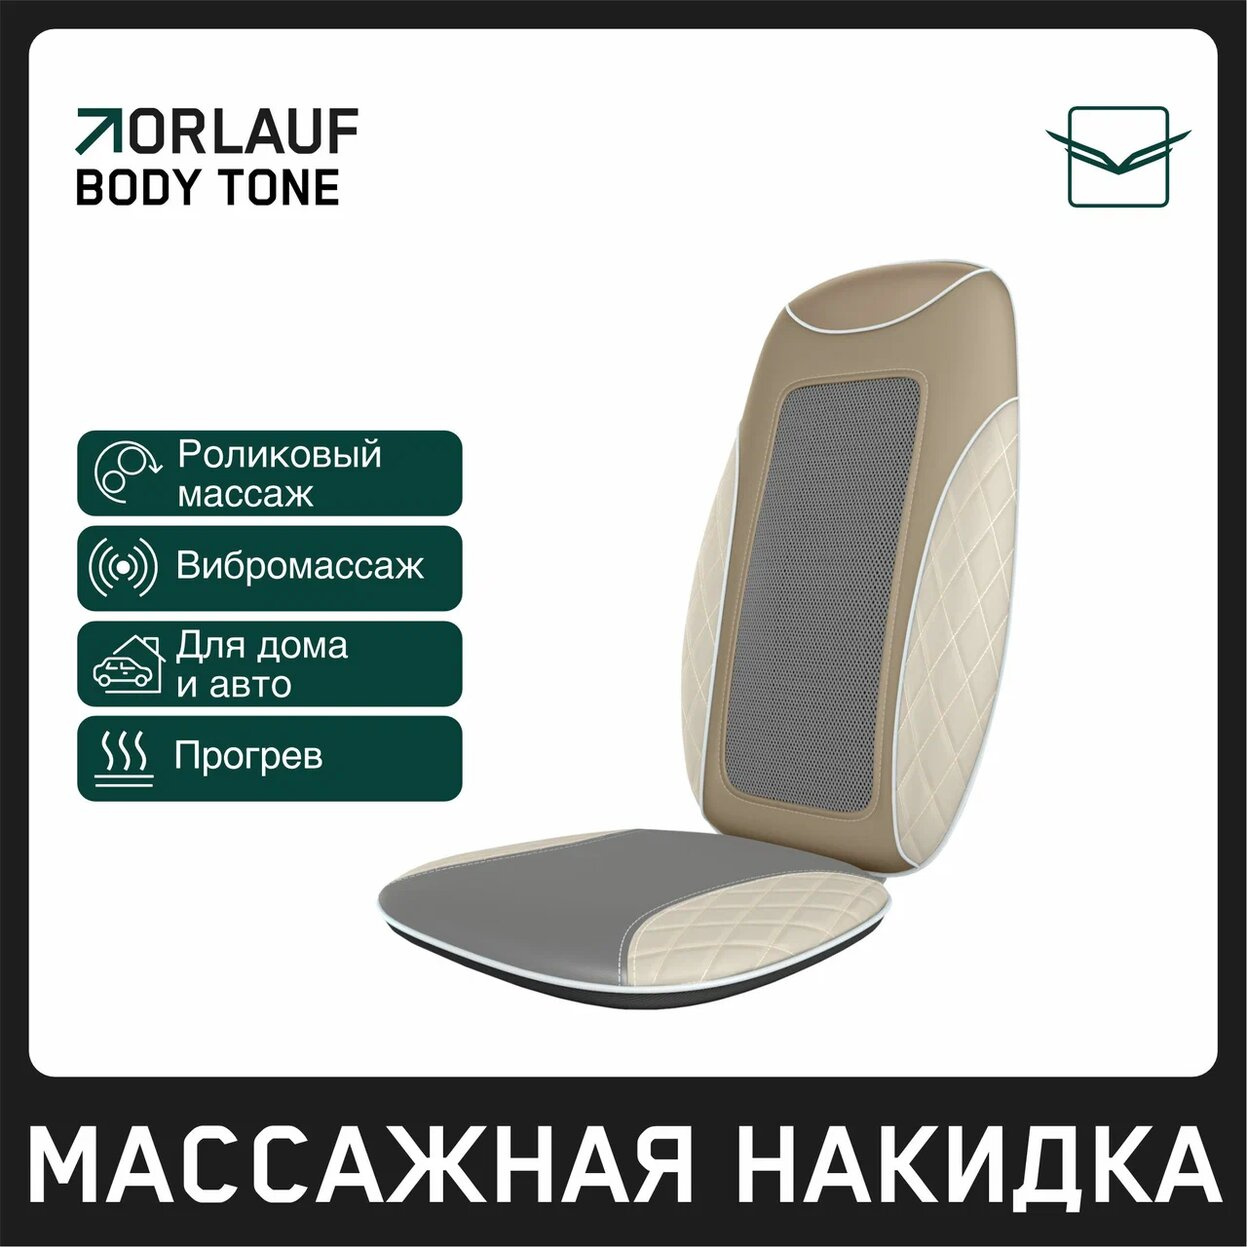 Orlauf Body Tone из каталога устройств для массажа в Омске по цене 15400 ₽